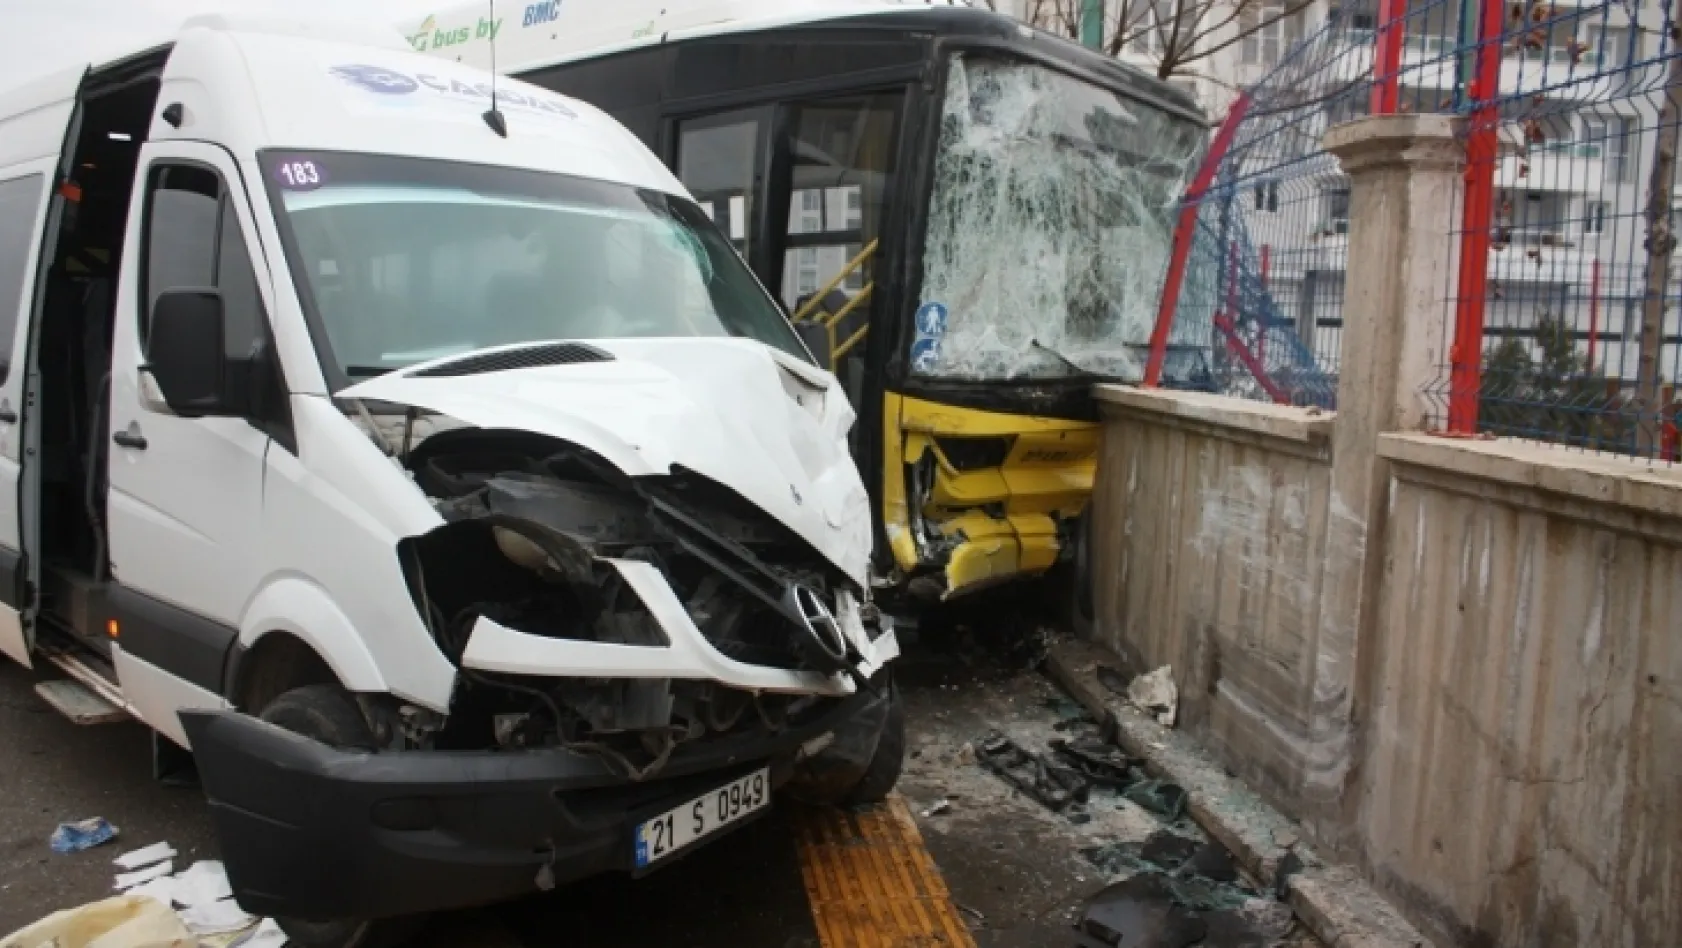 Servis minibüsü ile halk otobüsü çarpıştı: 13 yaralı